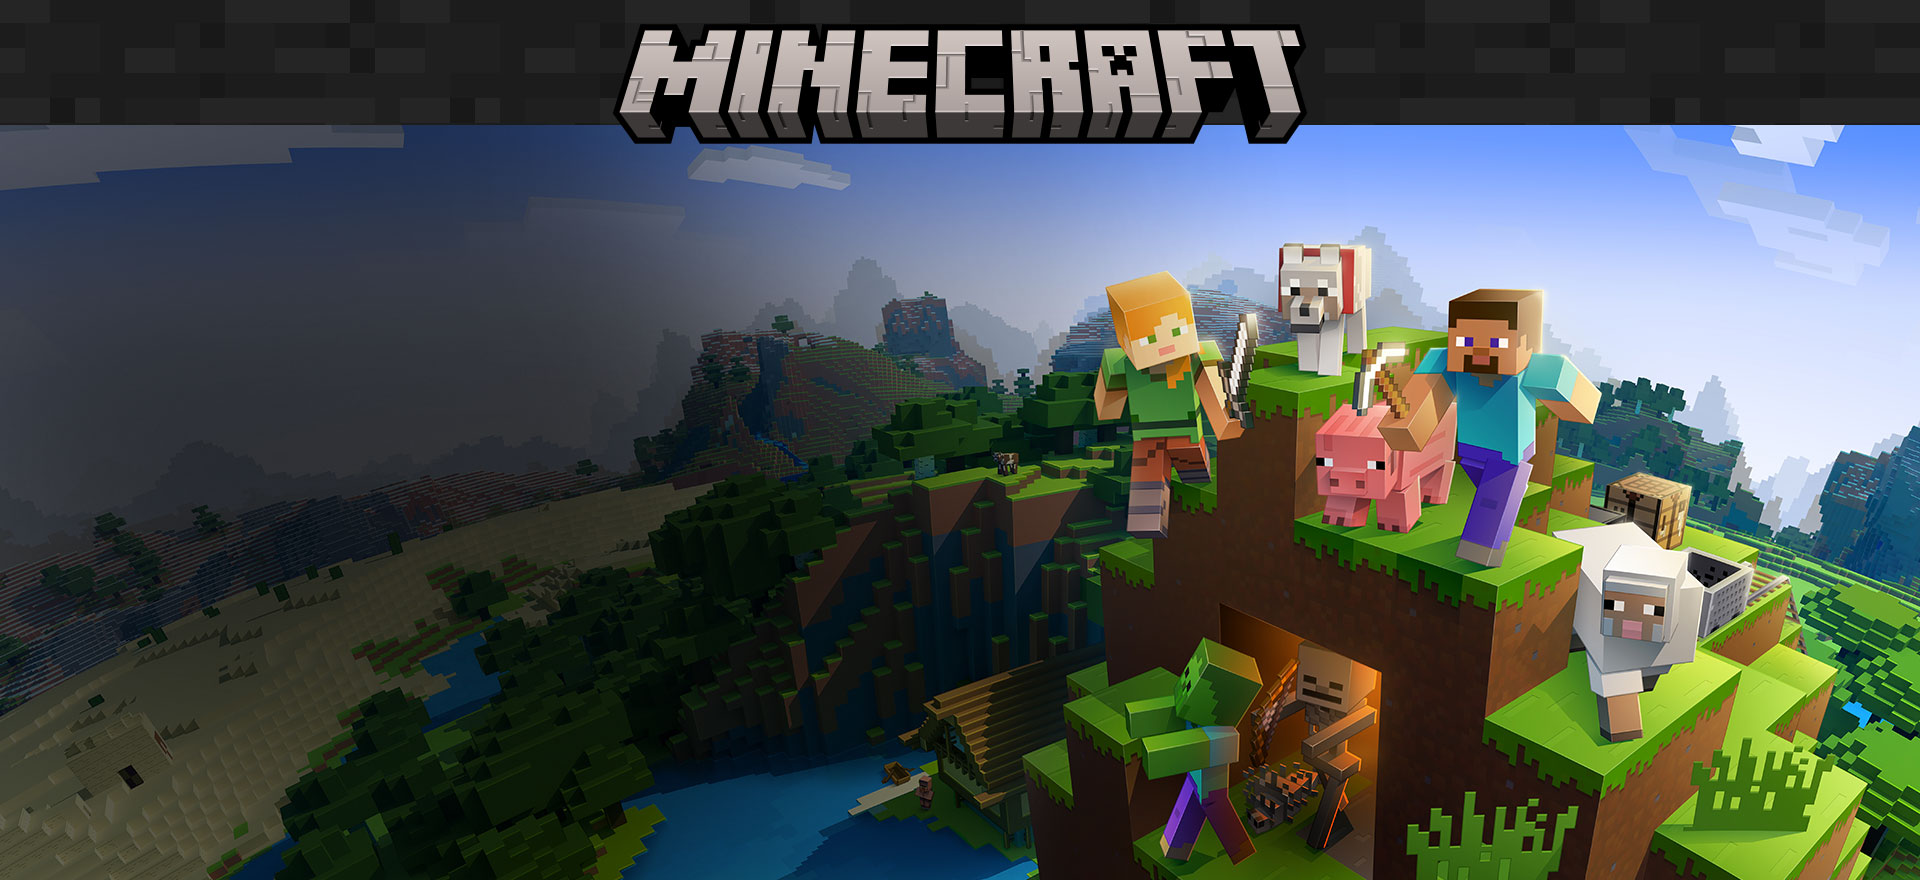 Minecraft-Logo mit Charakteren aus dem Spiel, die durch eine Landschaft aus Blöcken laufen.